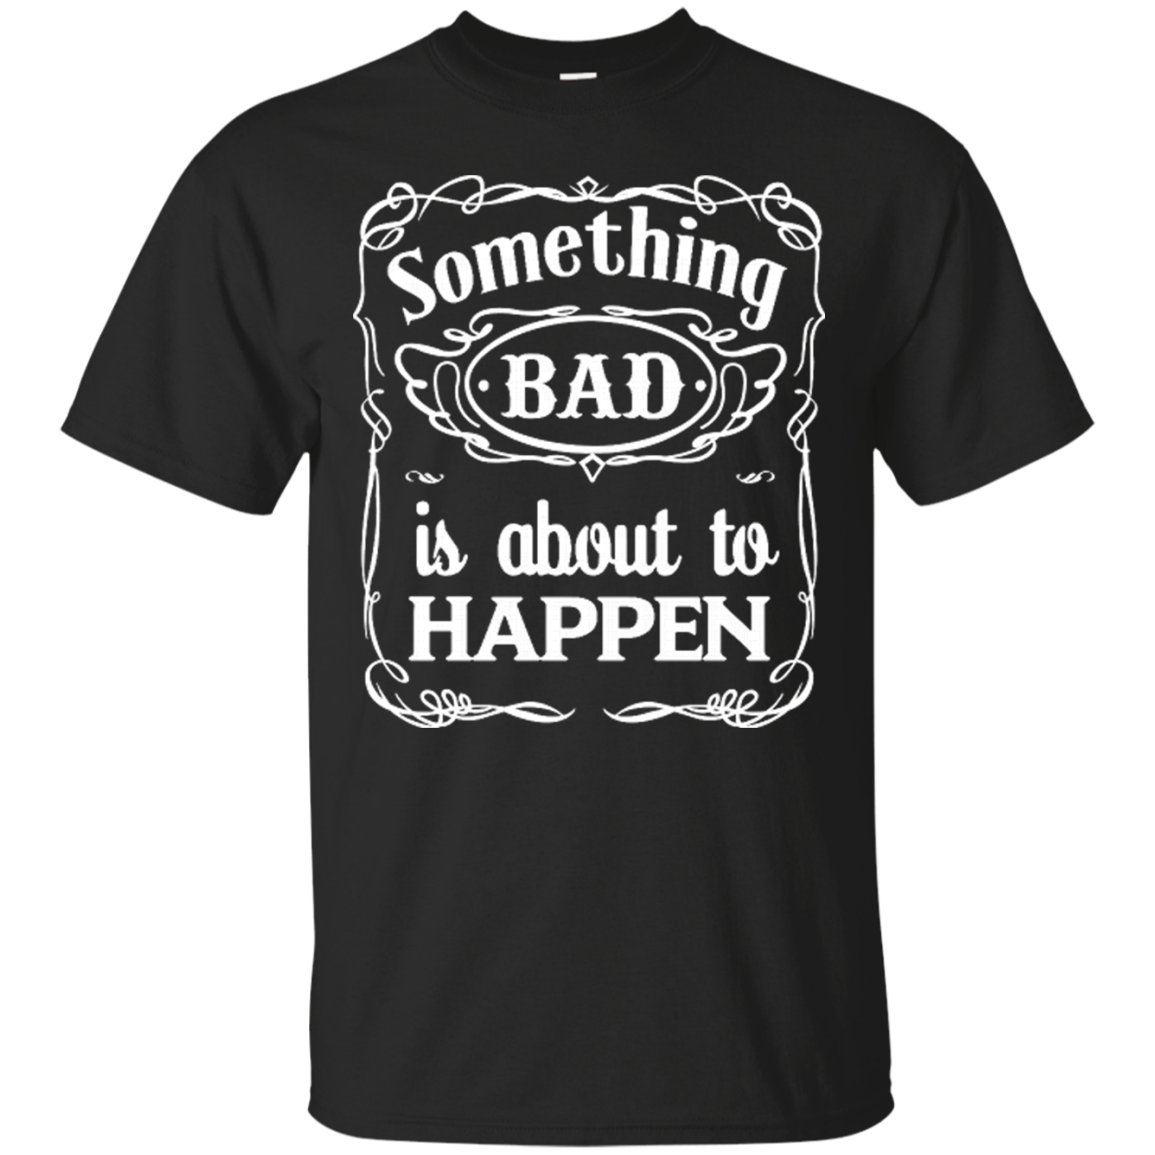 Something Bad by Dab10